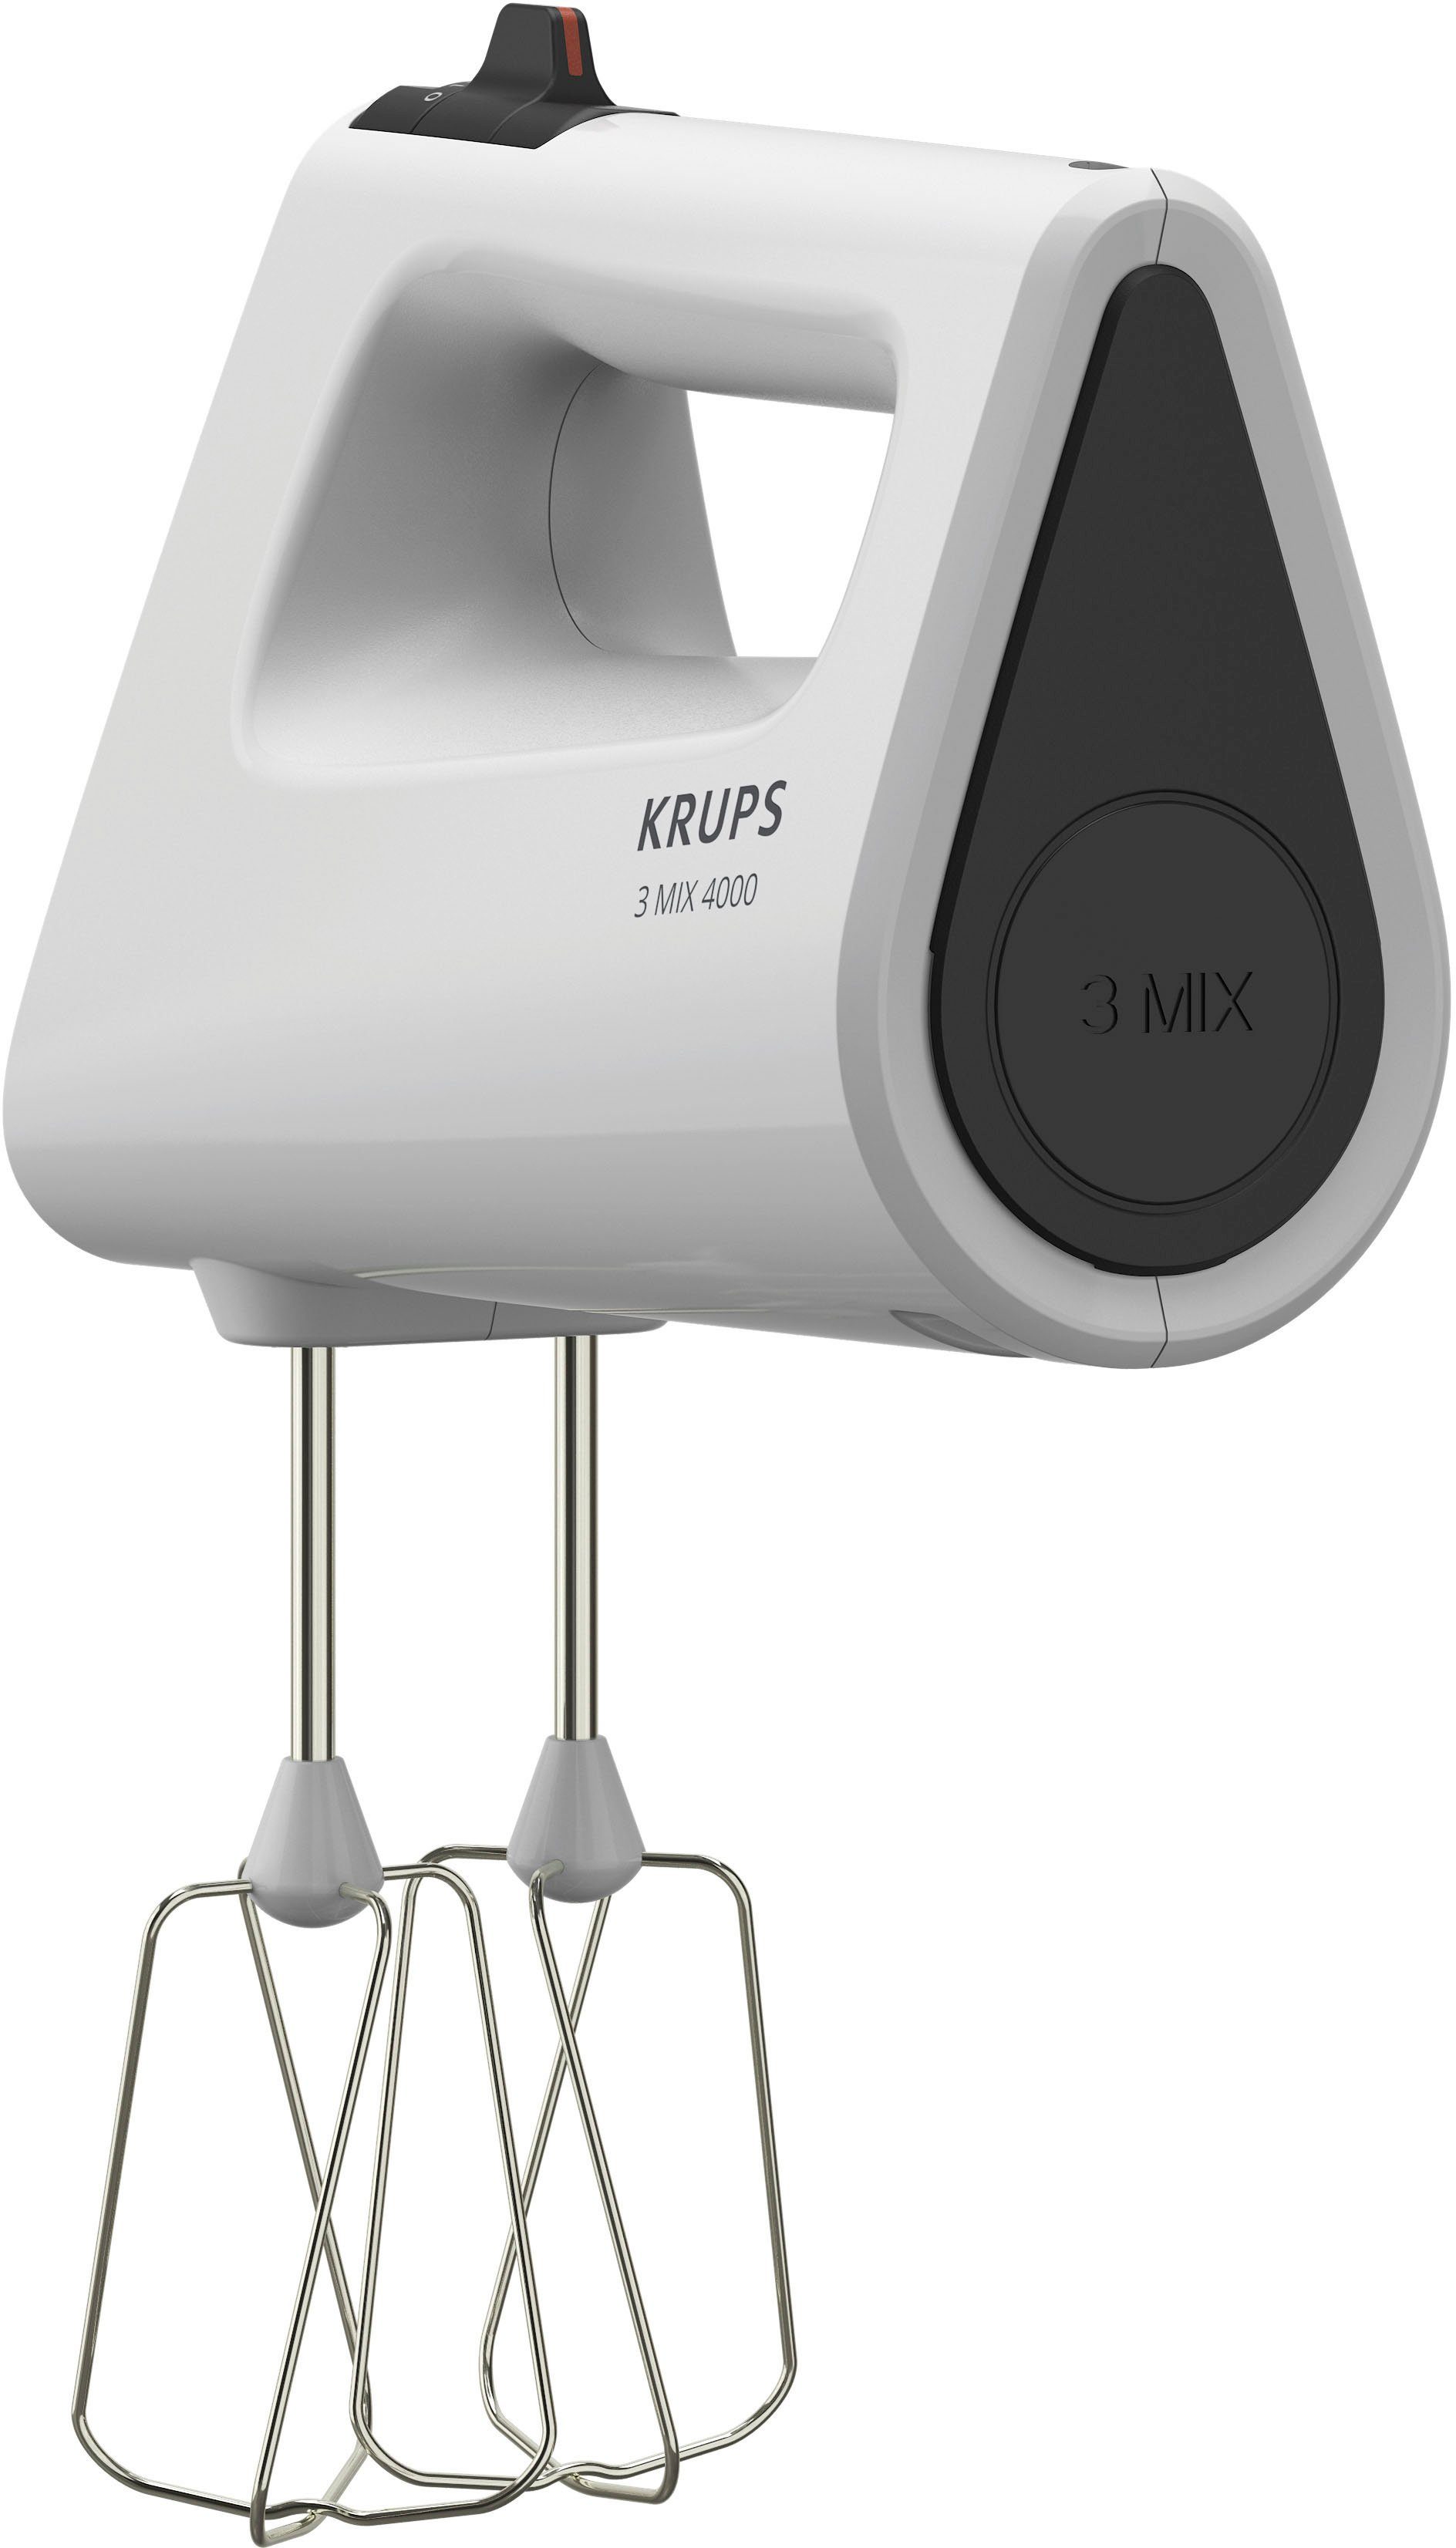 Krups Handmixer GN4001 3 Mix 4000, 450 W, Turbo- und Auswurf-Funktion,  inkl. 2 Rührbesen und 2 Knethaken